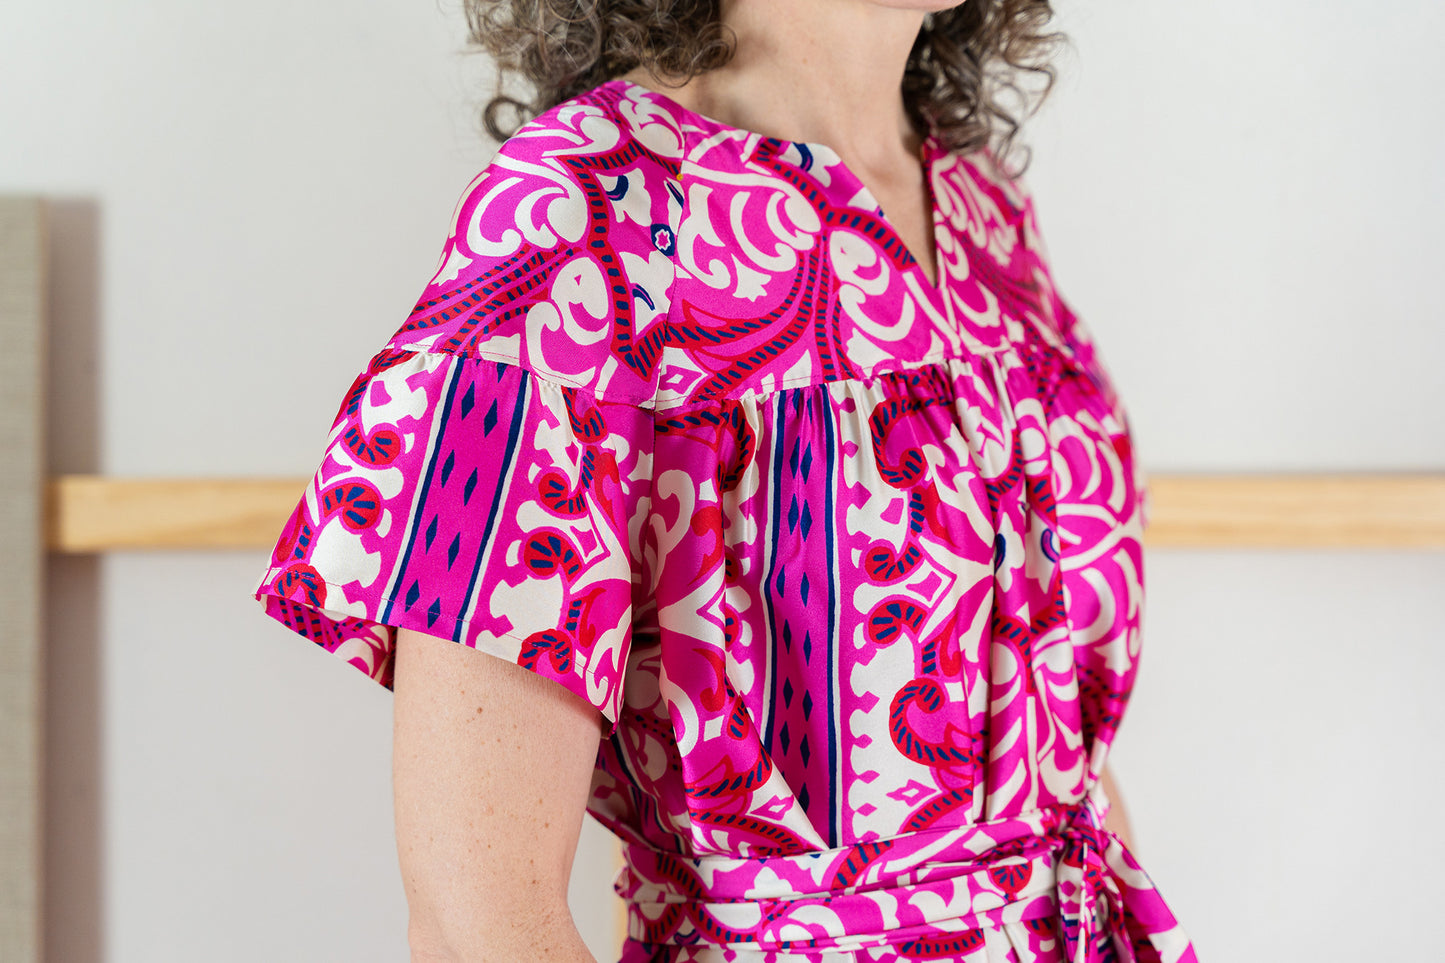 Liesl + Co - Positano Blouse & Dress Pattern